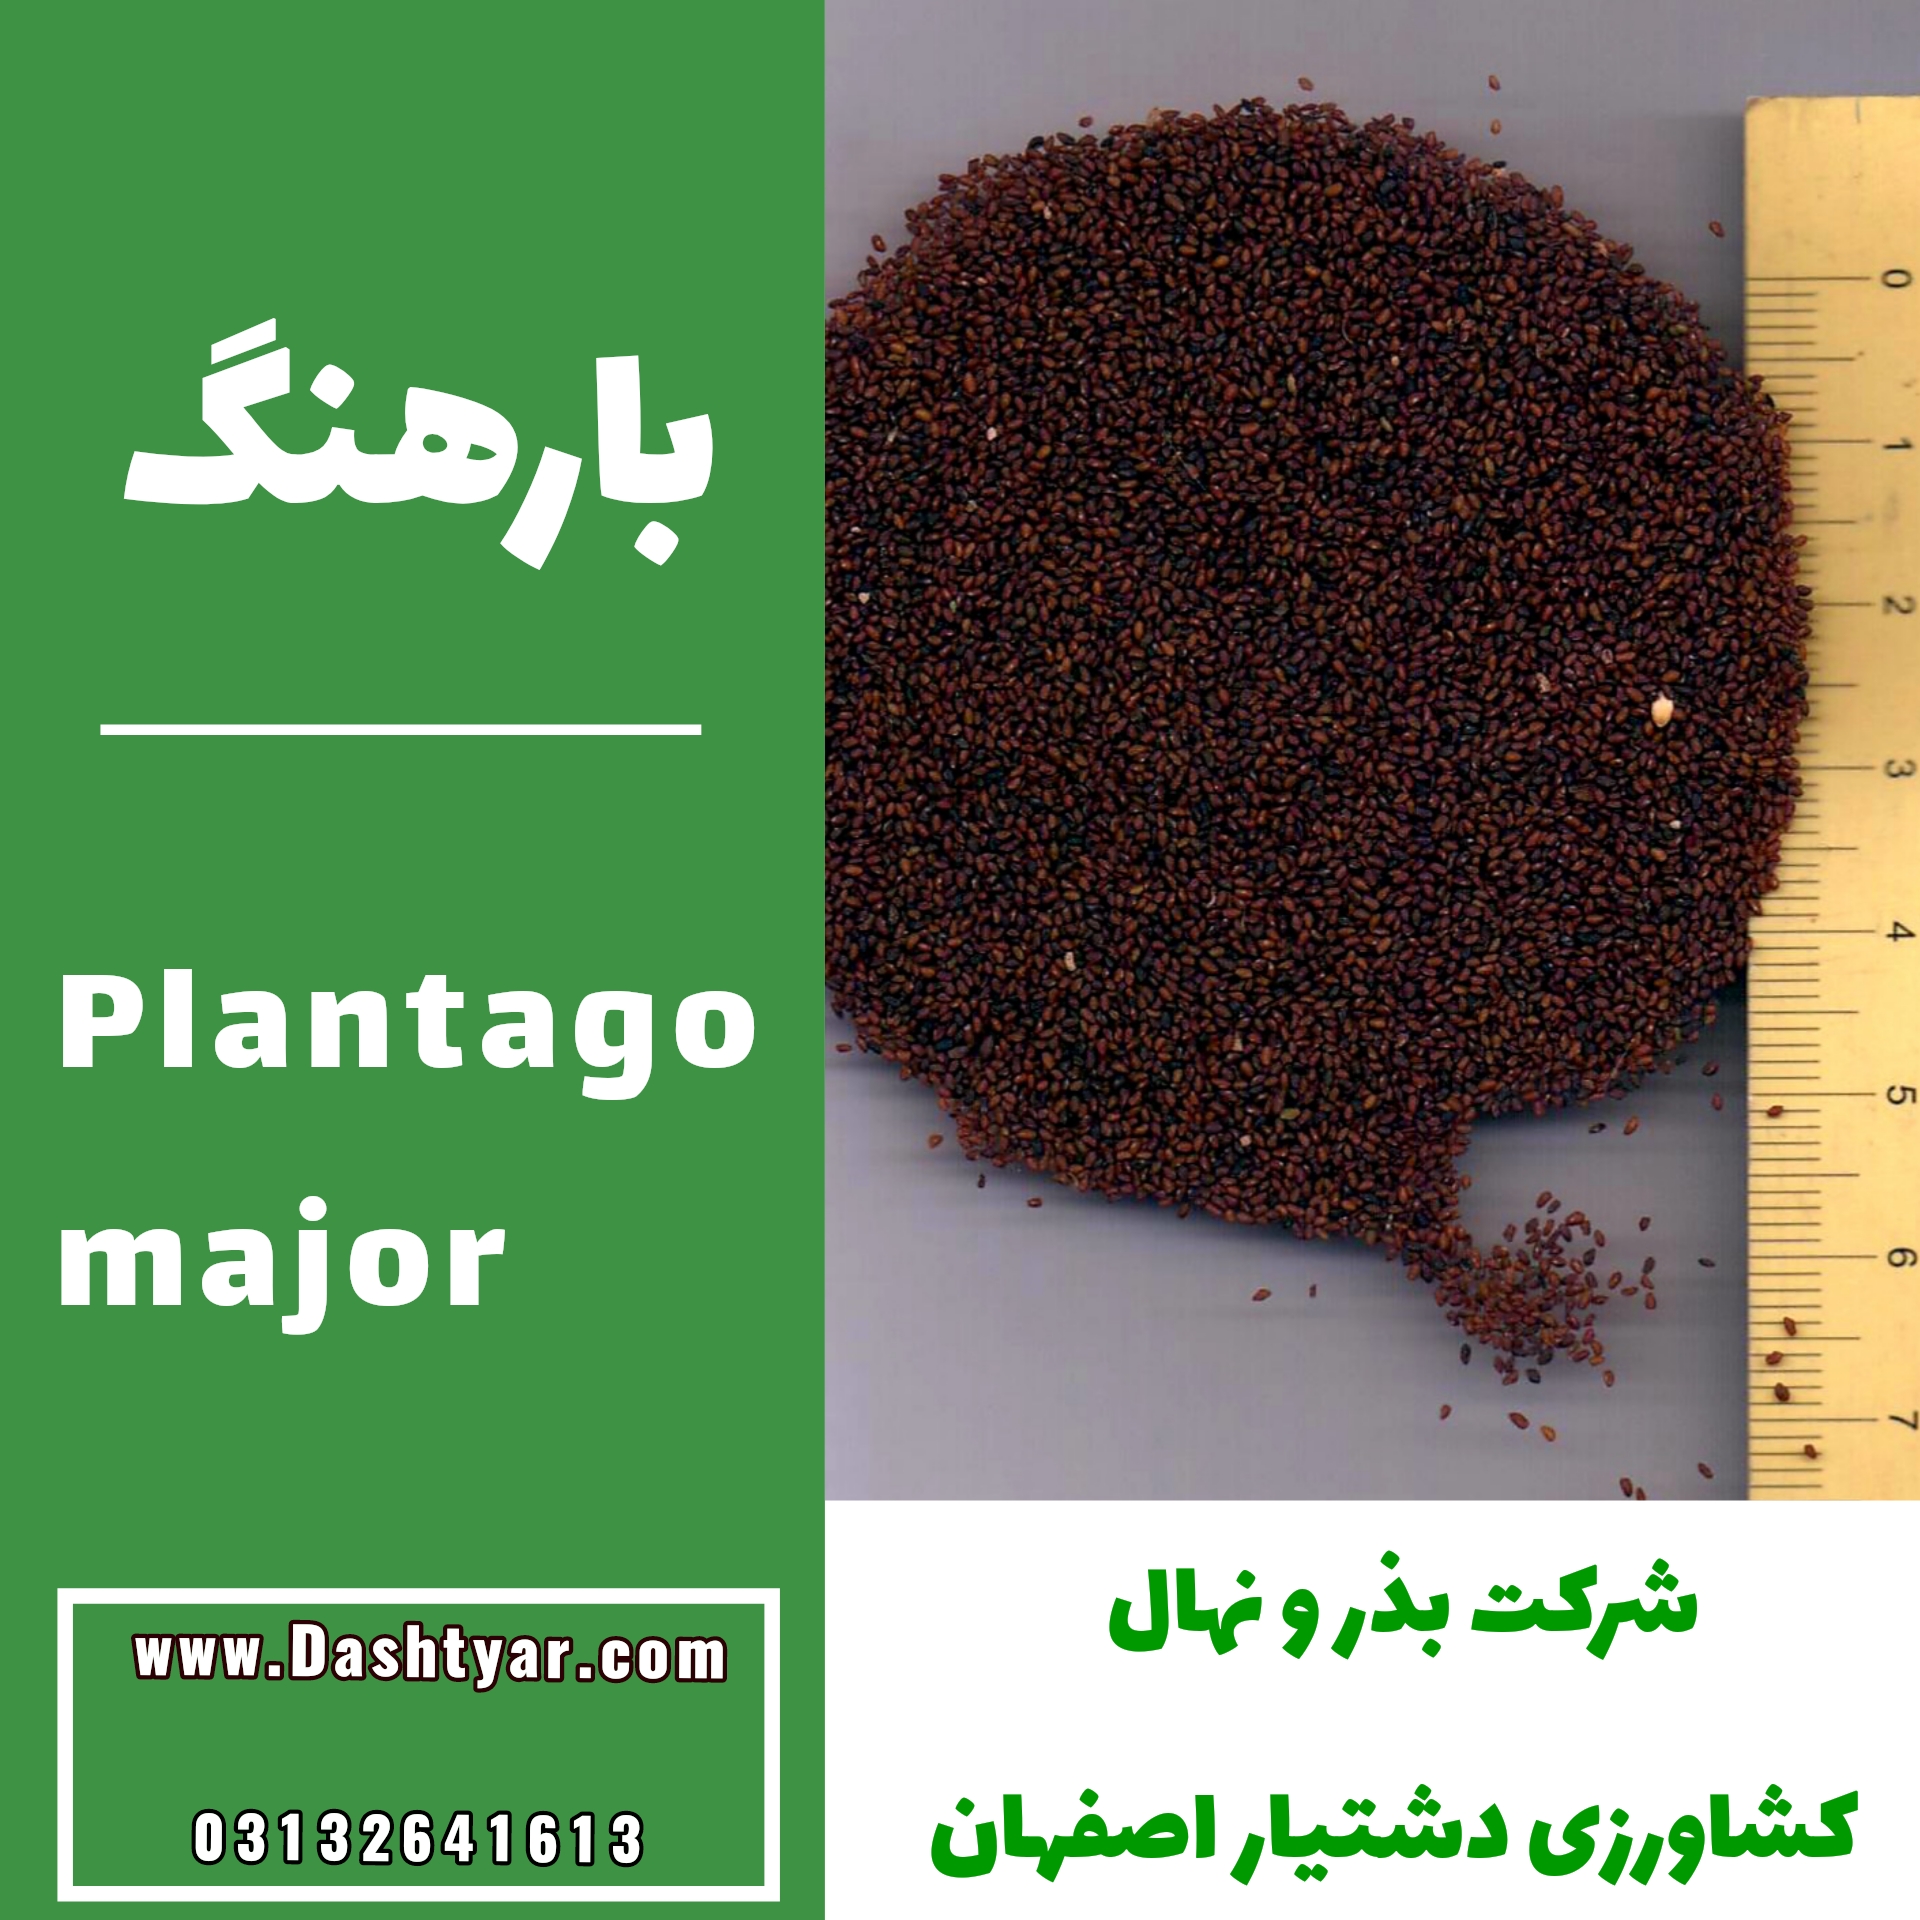 بذر بارهنگ(Plantago major)